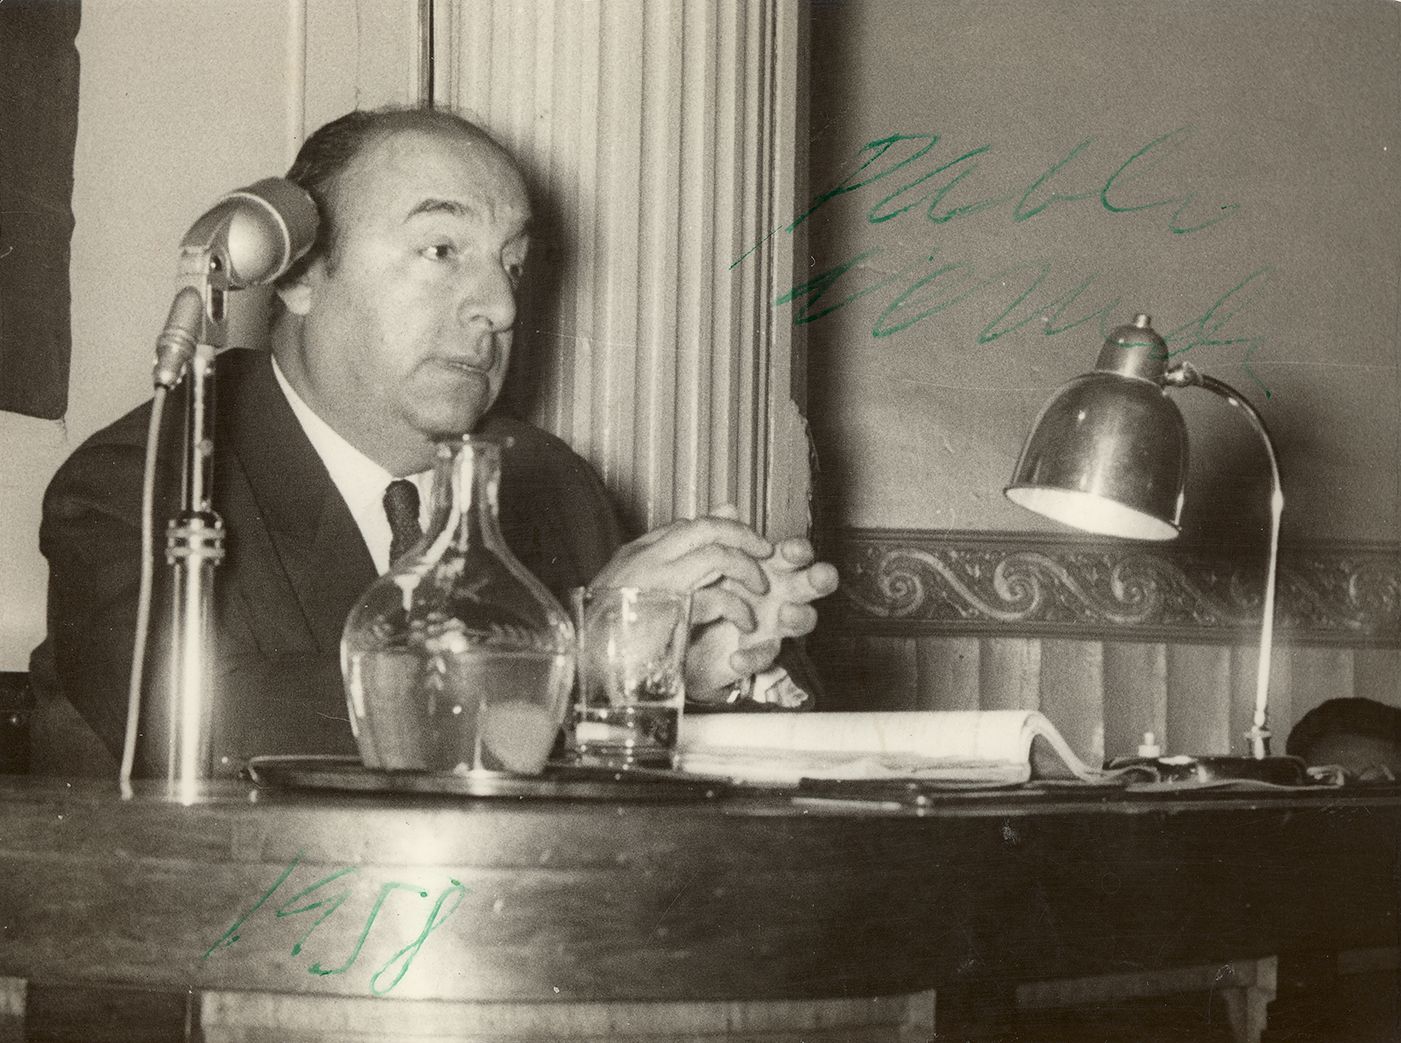 Retrato de Pablo Neruda